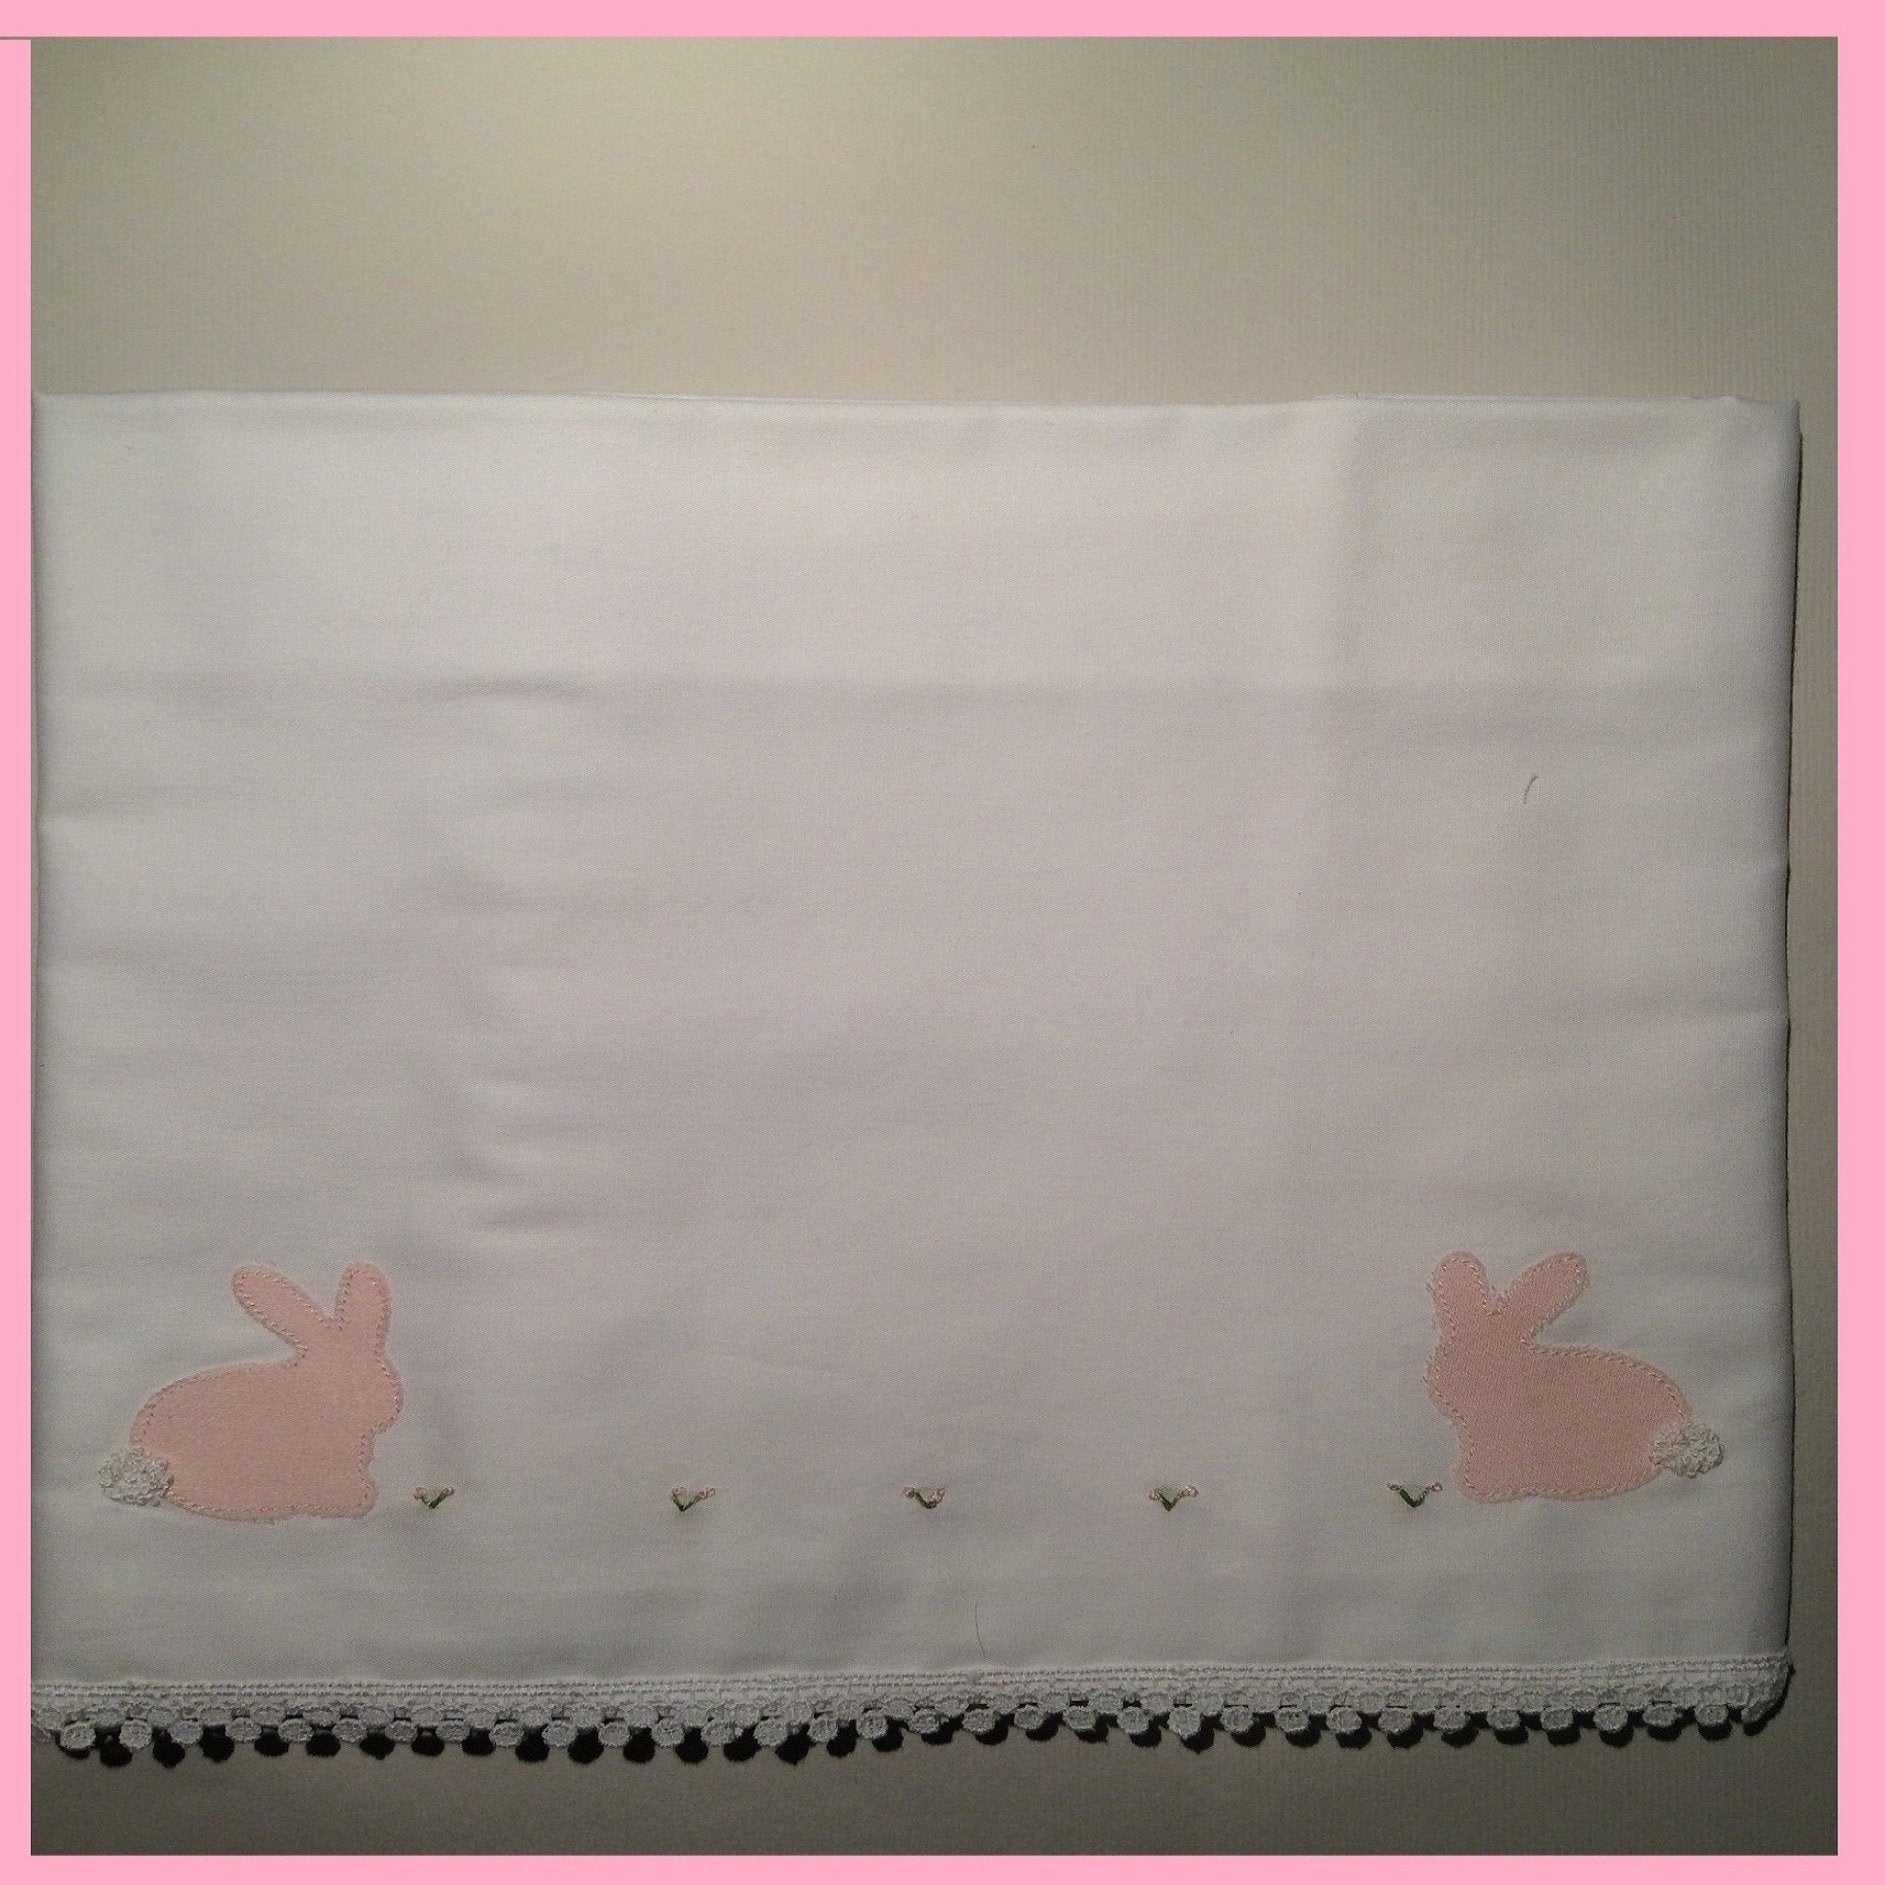 Bunny - Cradle sheet cod 406